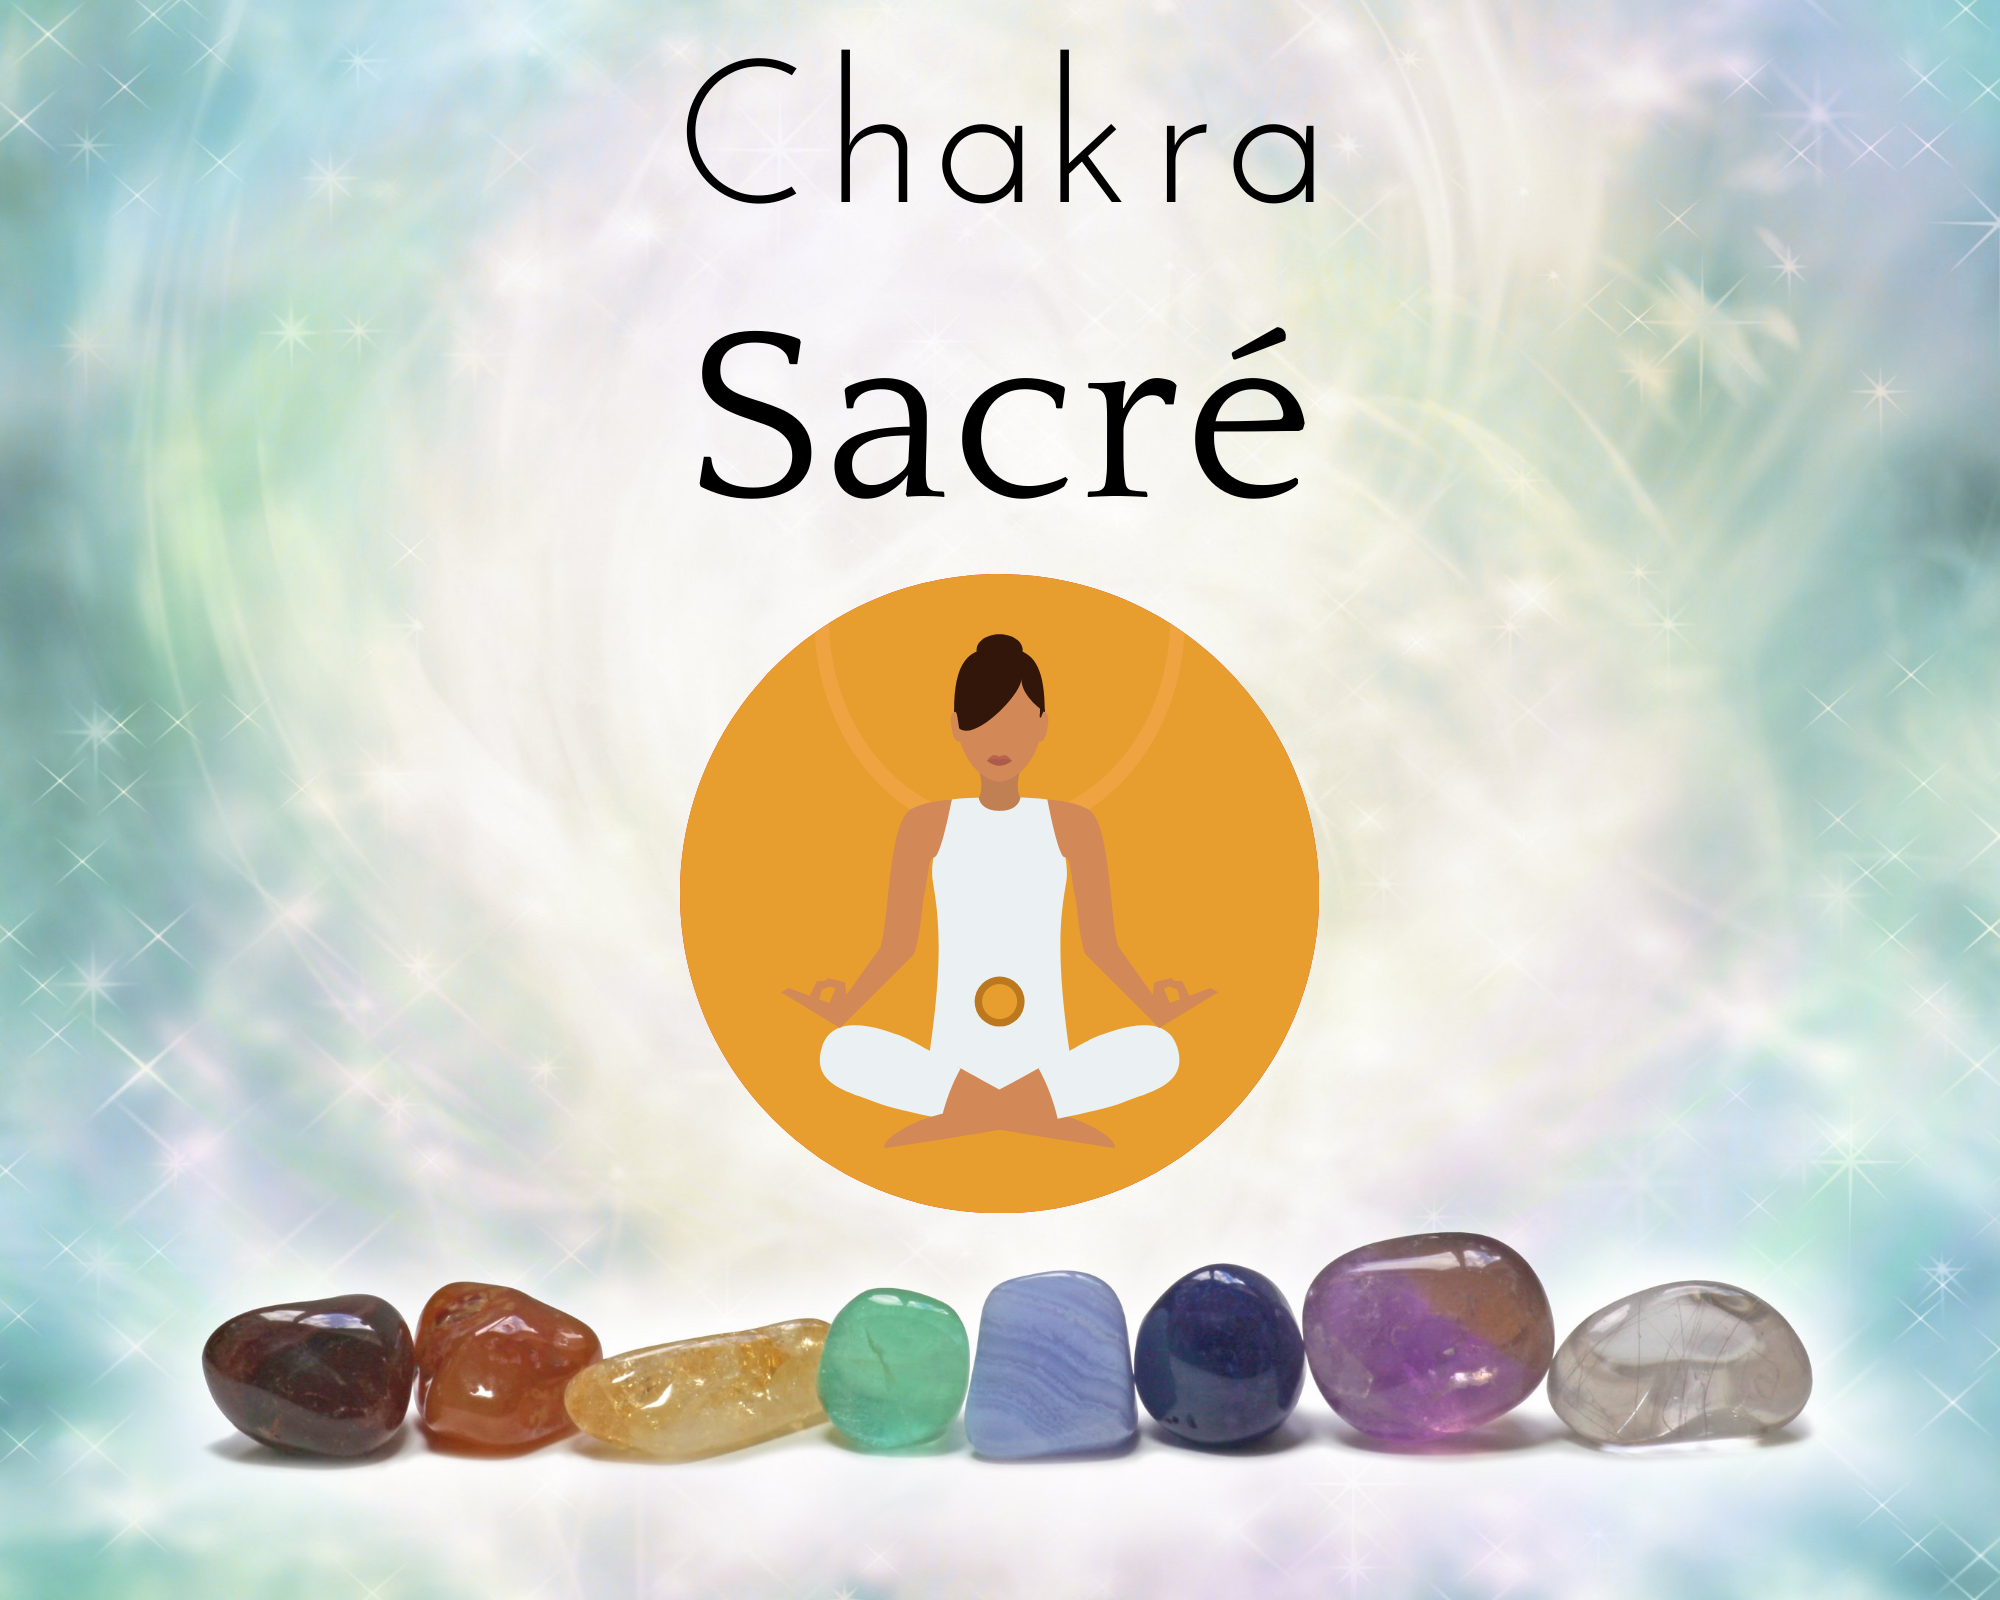 Le chakra sacré ou Svadhisthana : Deuxième des sept chakras